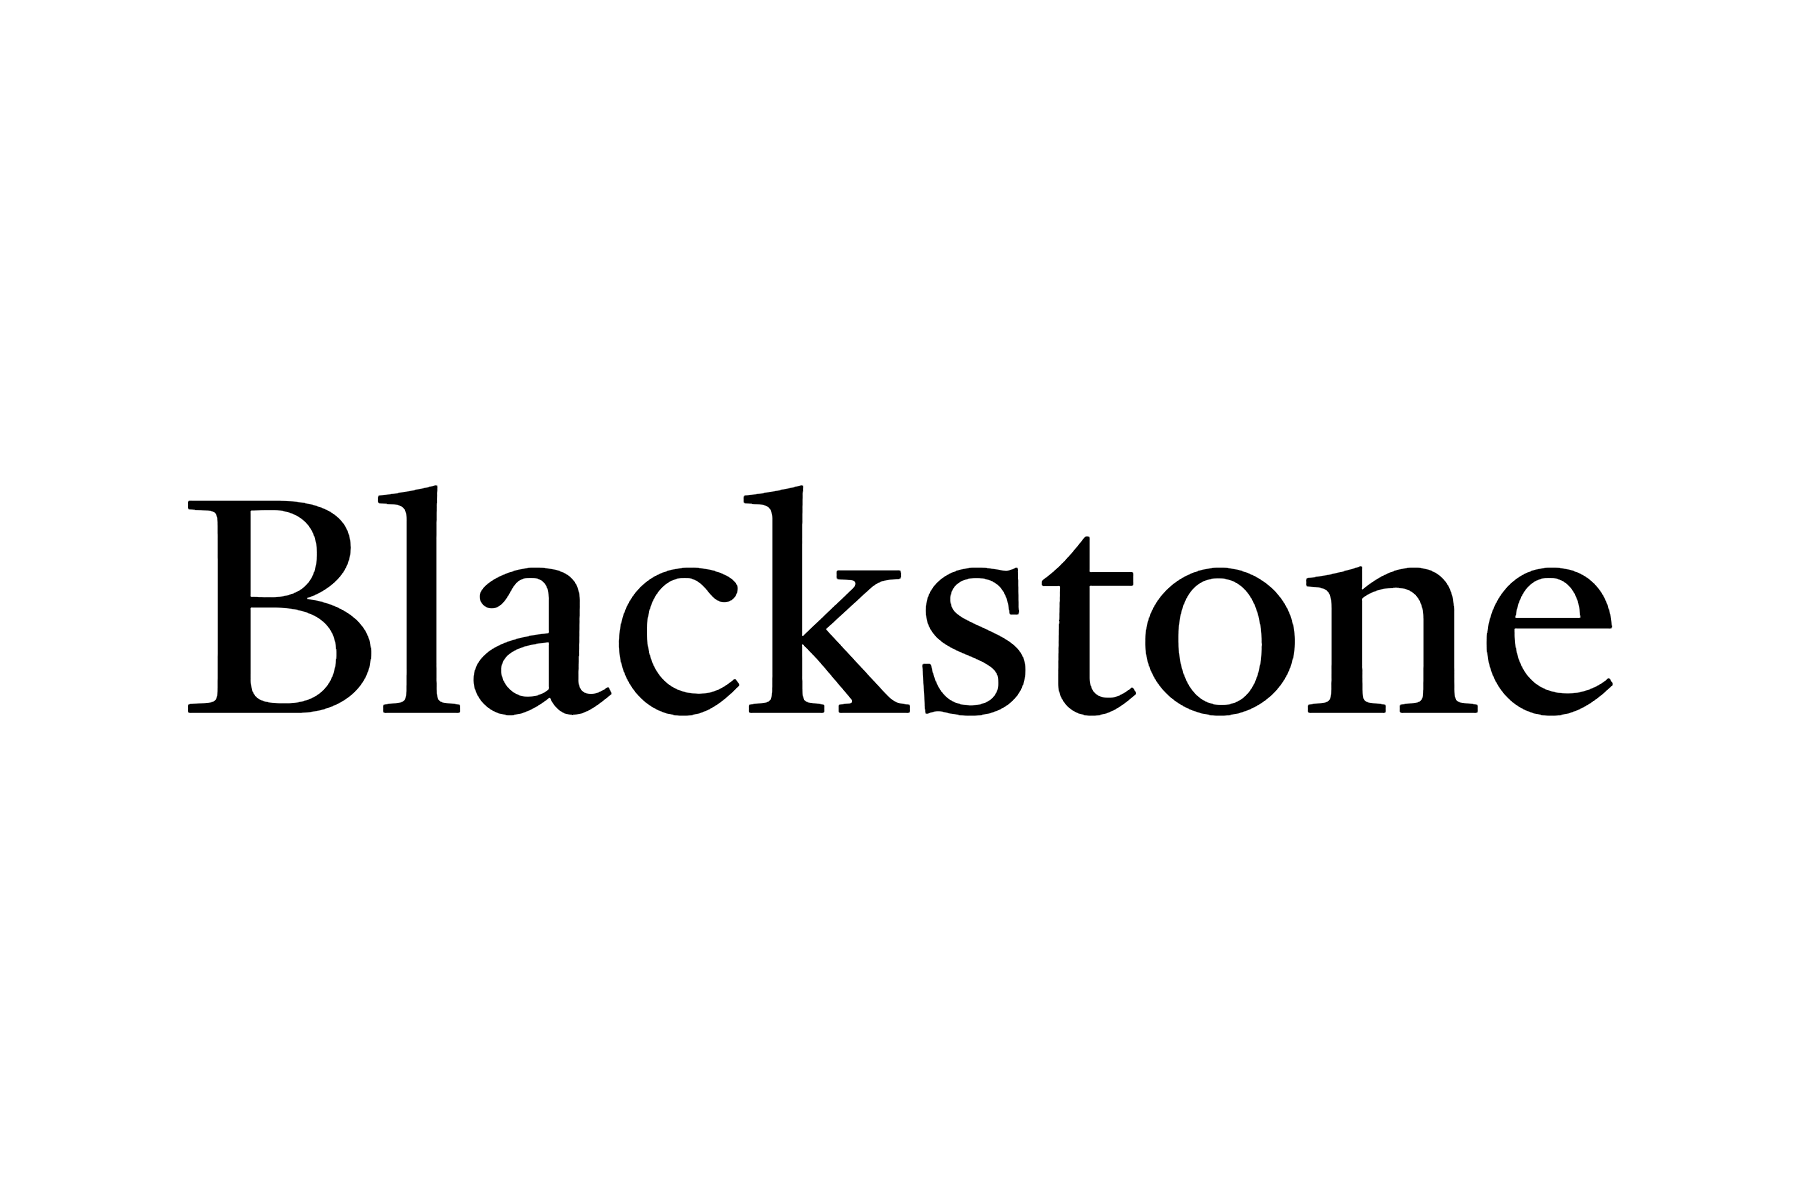 Blackstone logo.